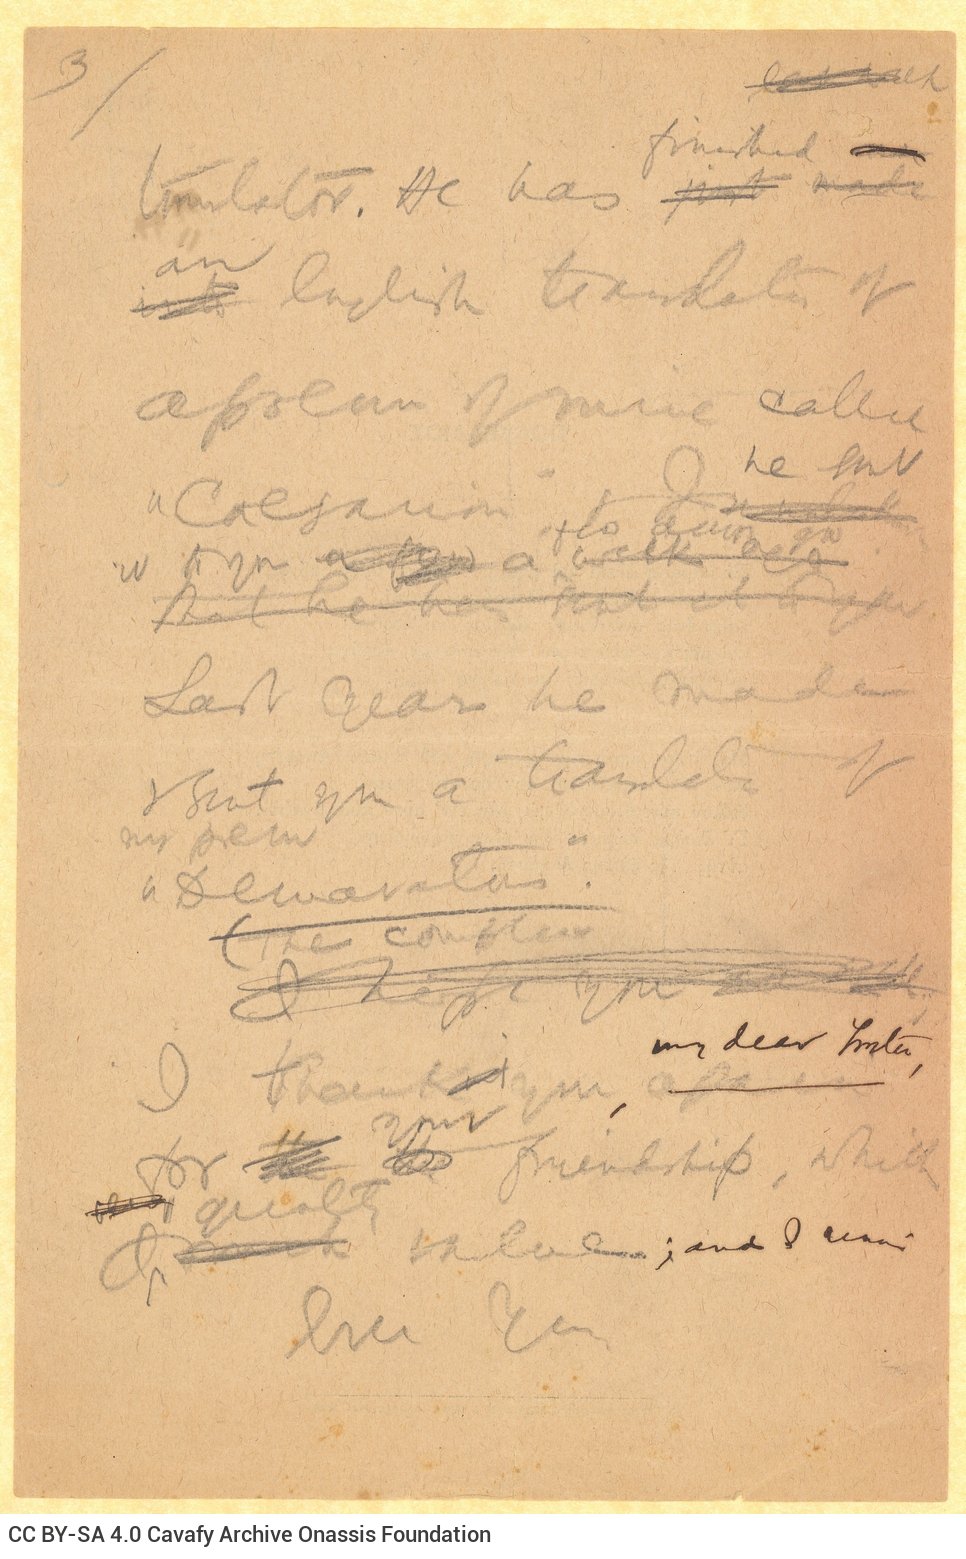 Χειρόγραφο σχέδιο επιστολής του Καβάφη προς τον Ε. Μ. Φόρστερ (E. M. Forste